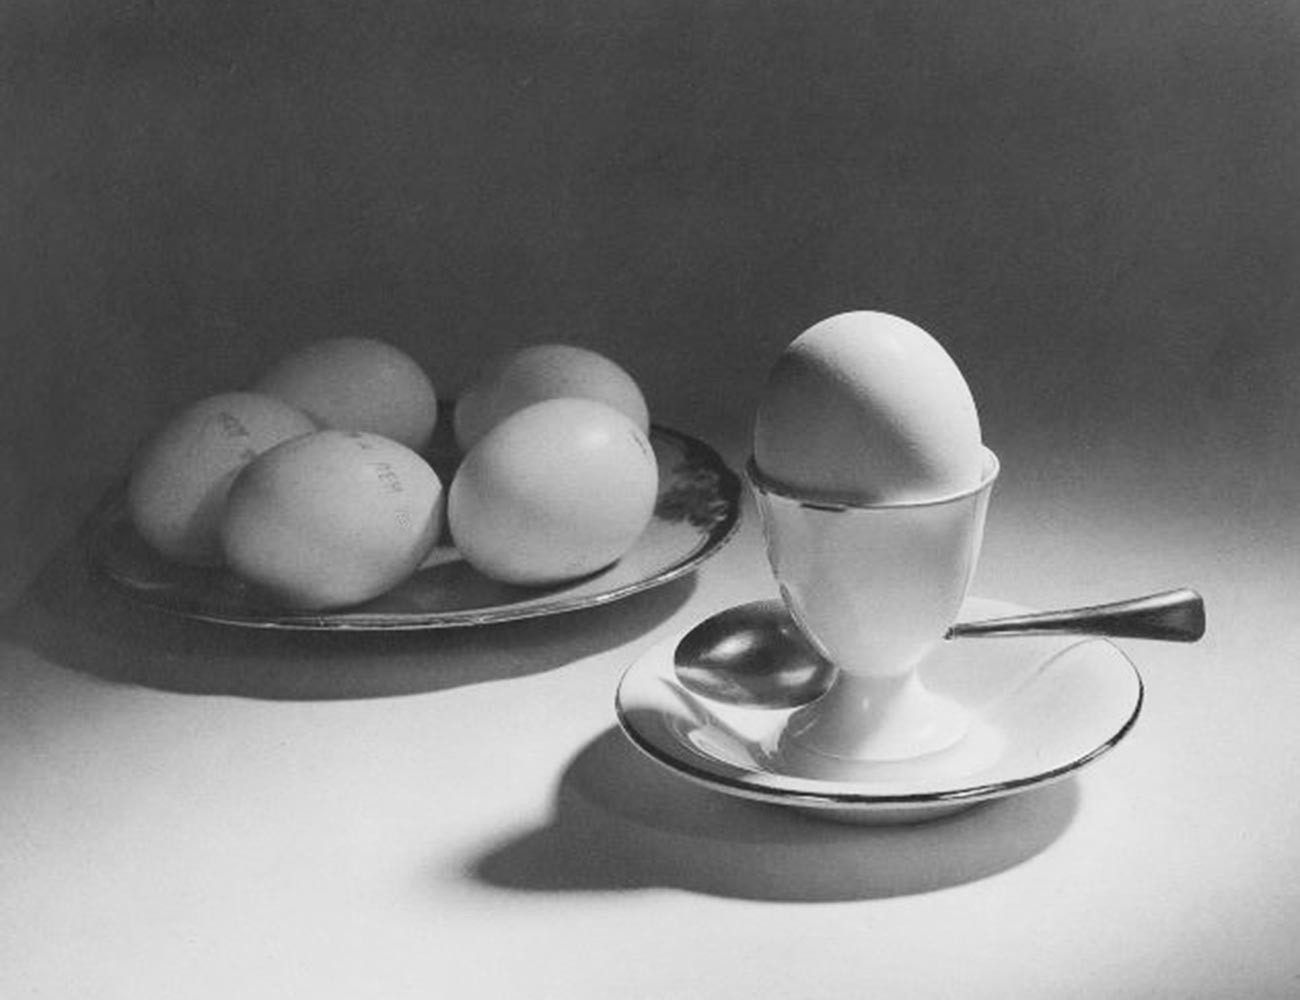 Huevos, una buena elección para una dieta equilibrada (1939)ю